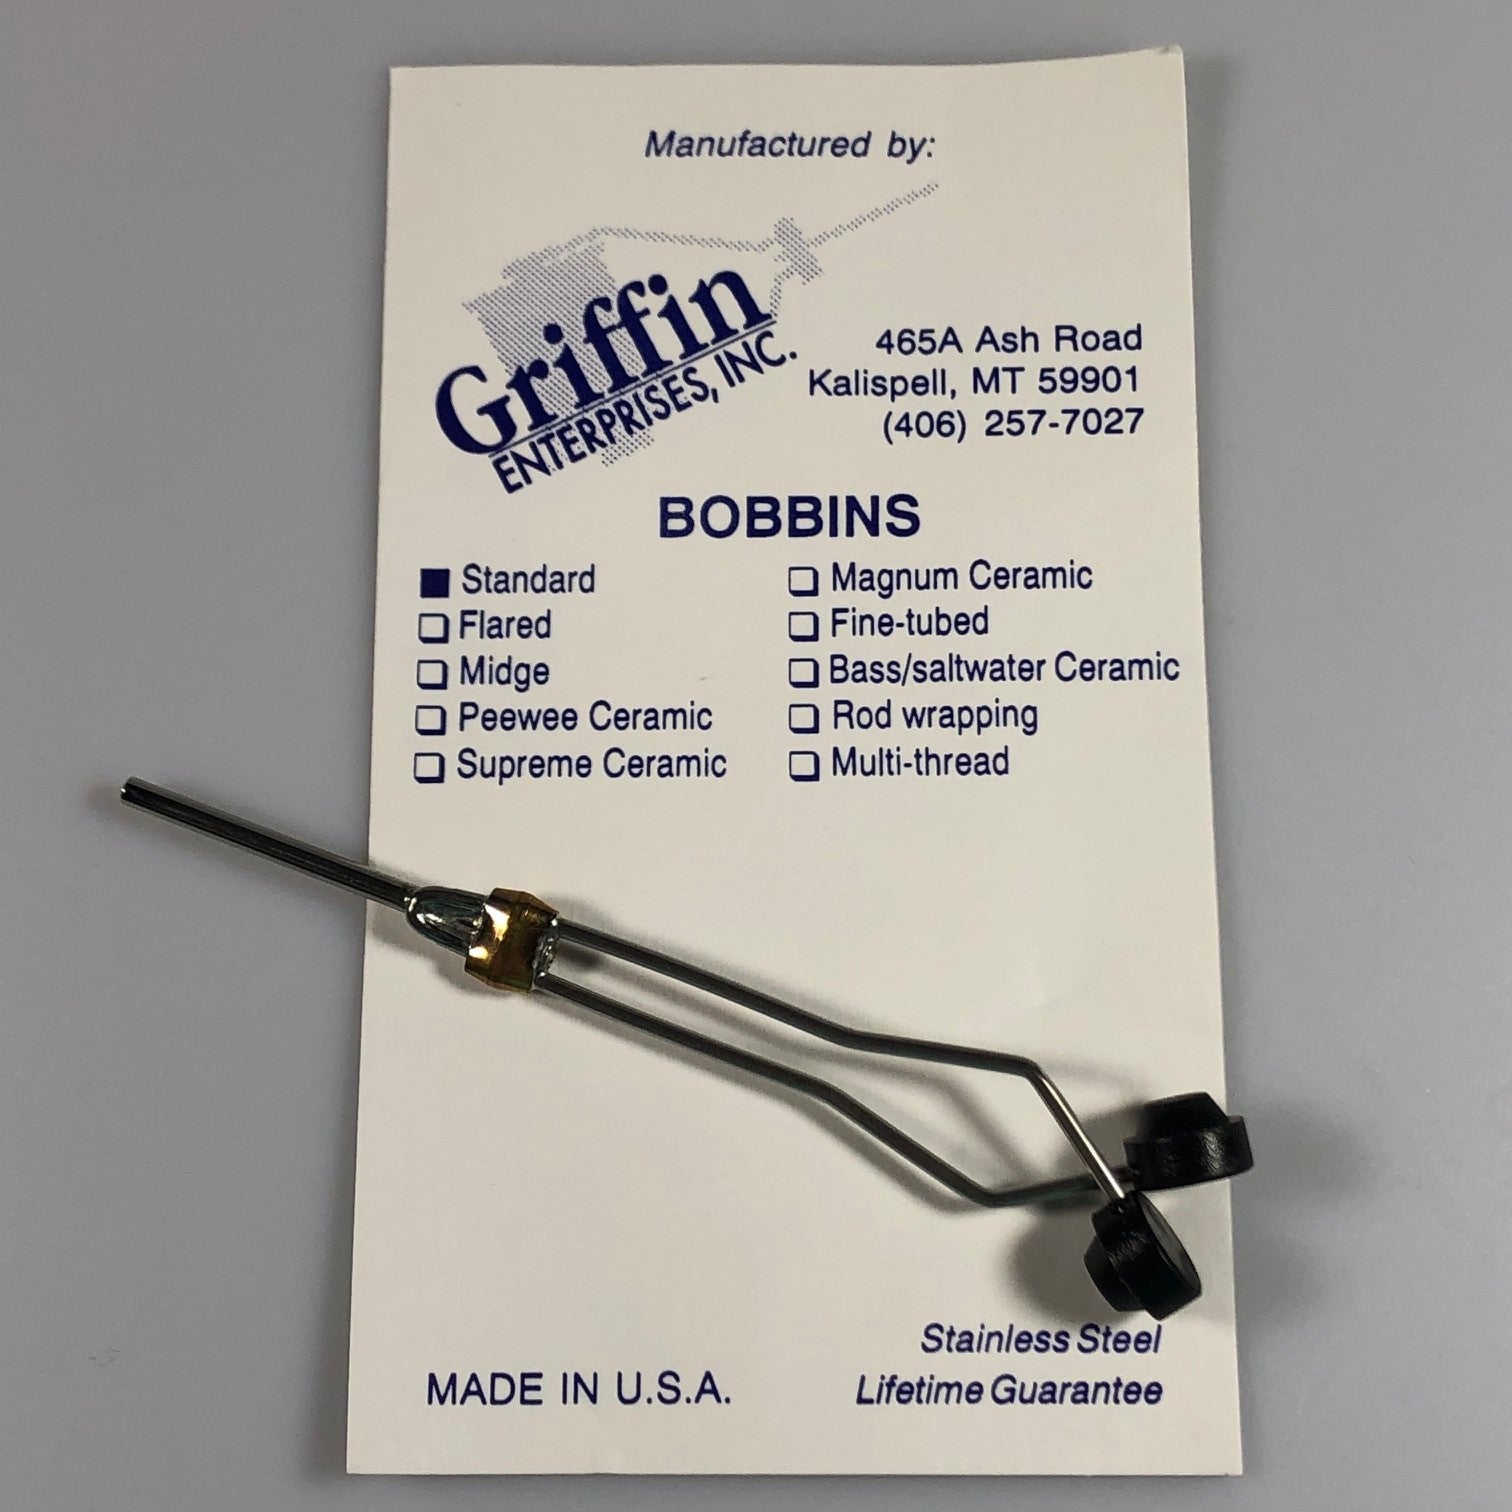 Griffin Standard Bobbin